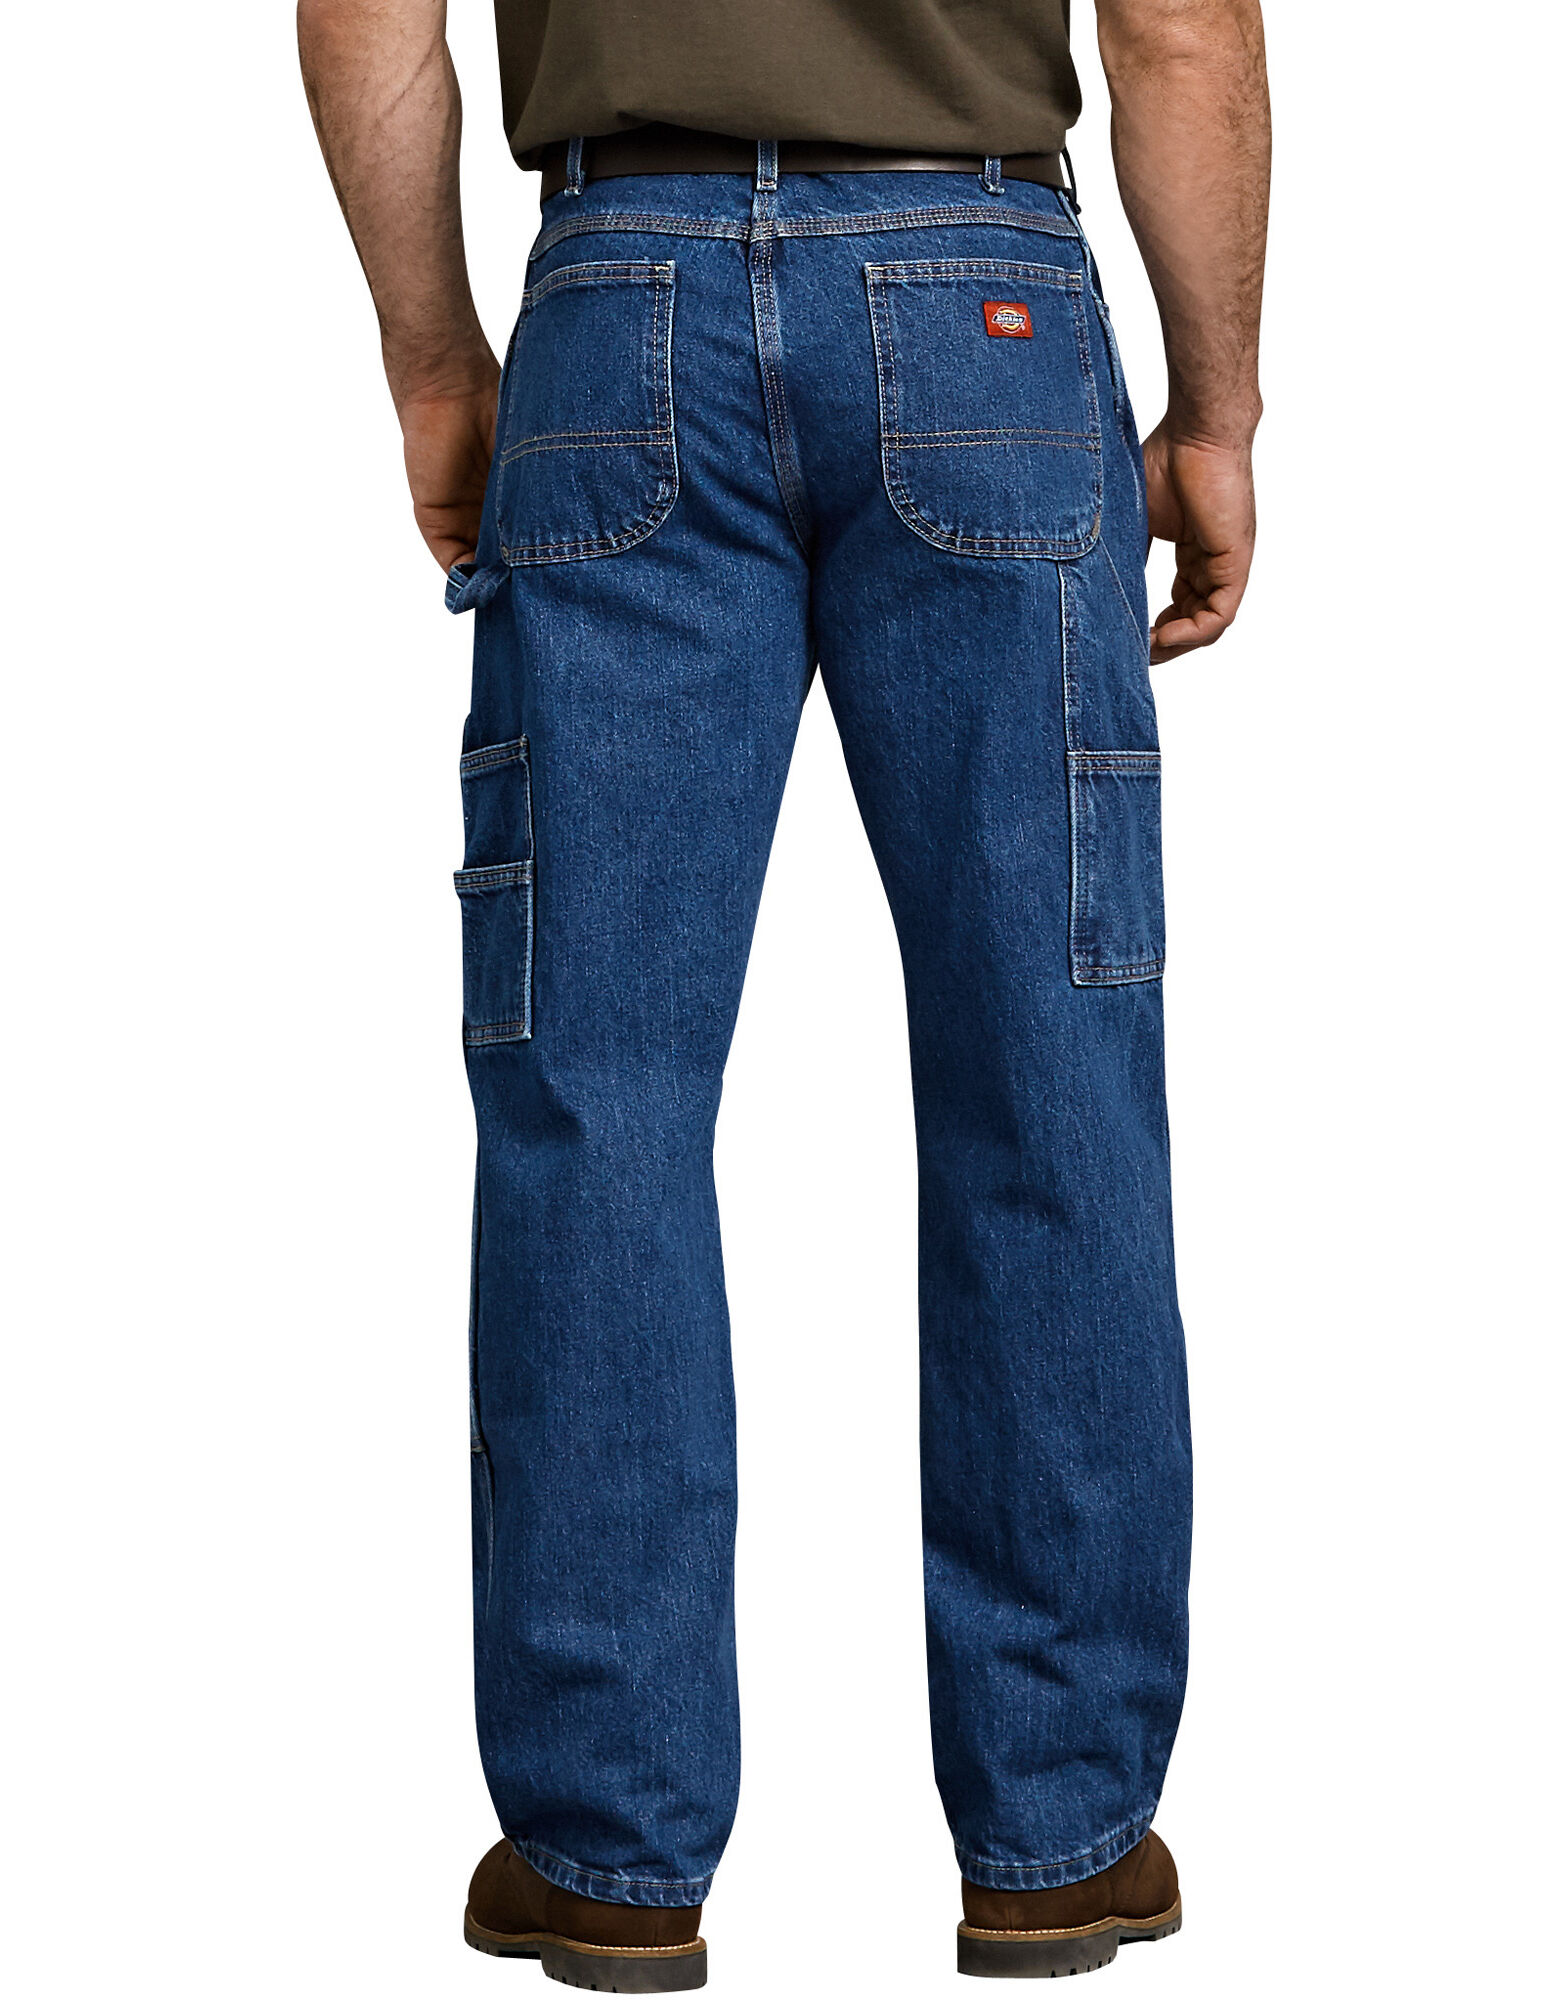 dickies loose fit carpenter jeans